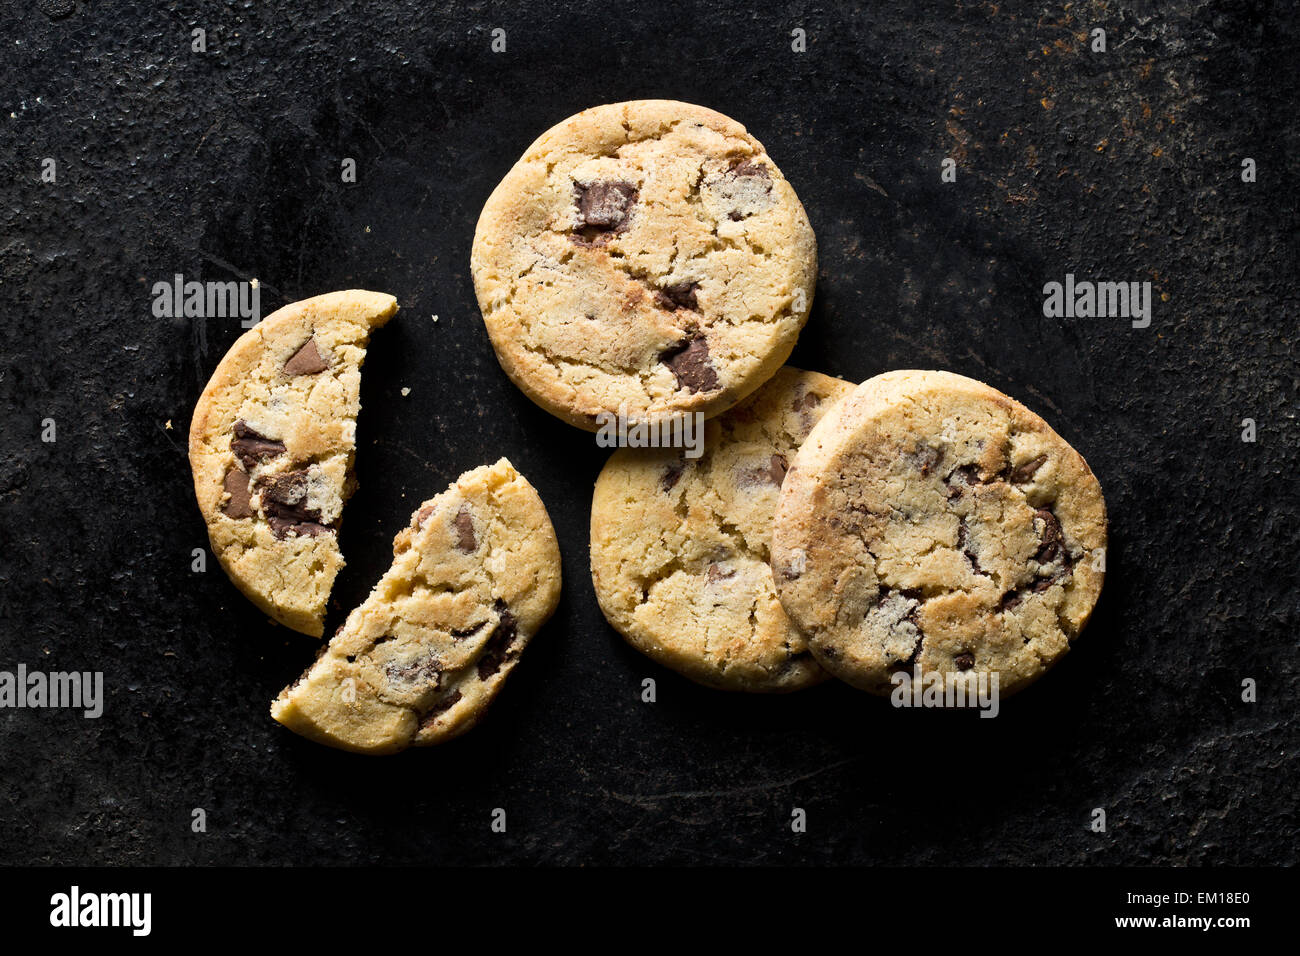 Vue de dessus de cookies au chocolat Banque D'Images